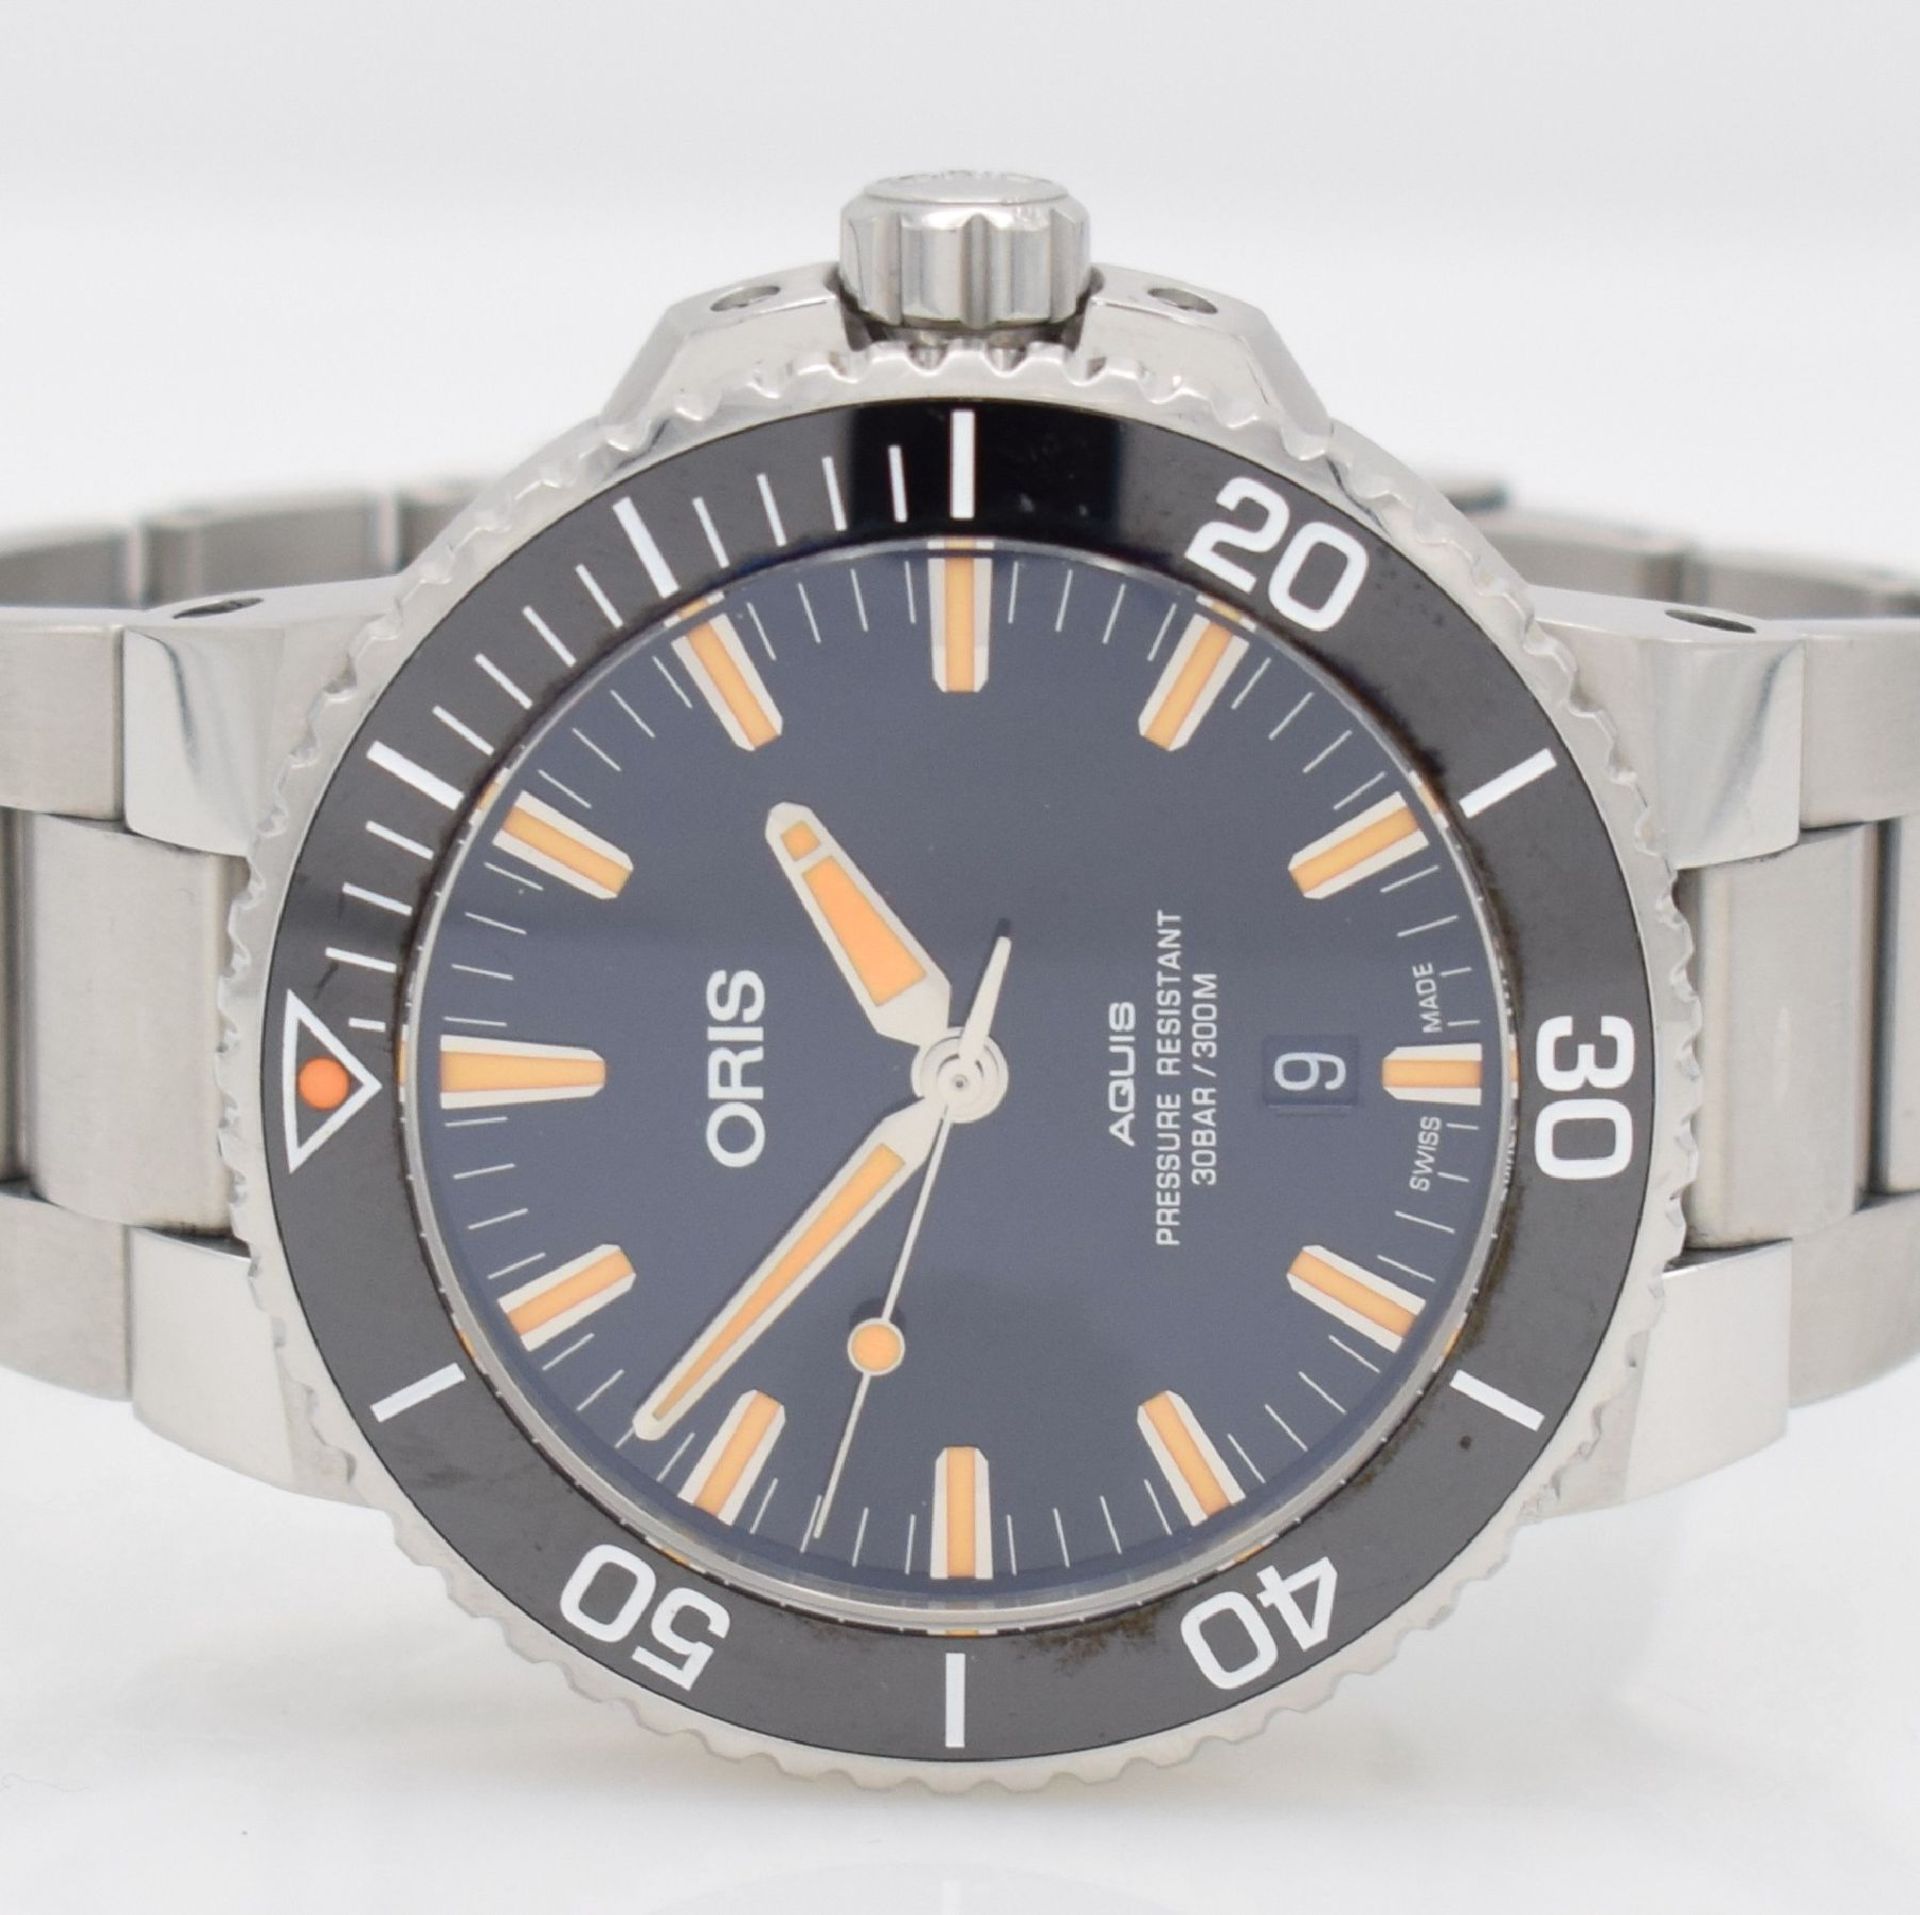 ORIS AQUIS gents wristwatch in stainless steel, Switzerland, reference 0173377304159- 0742464EB, - Bild 2 aus 8